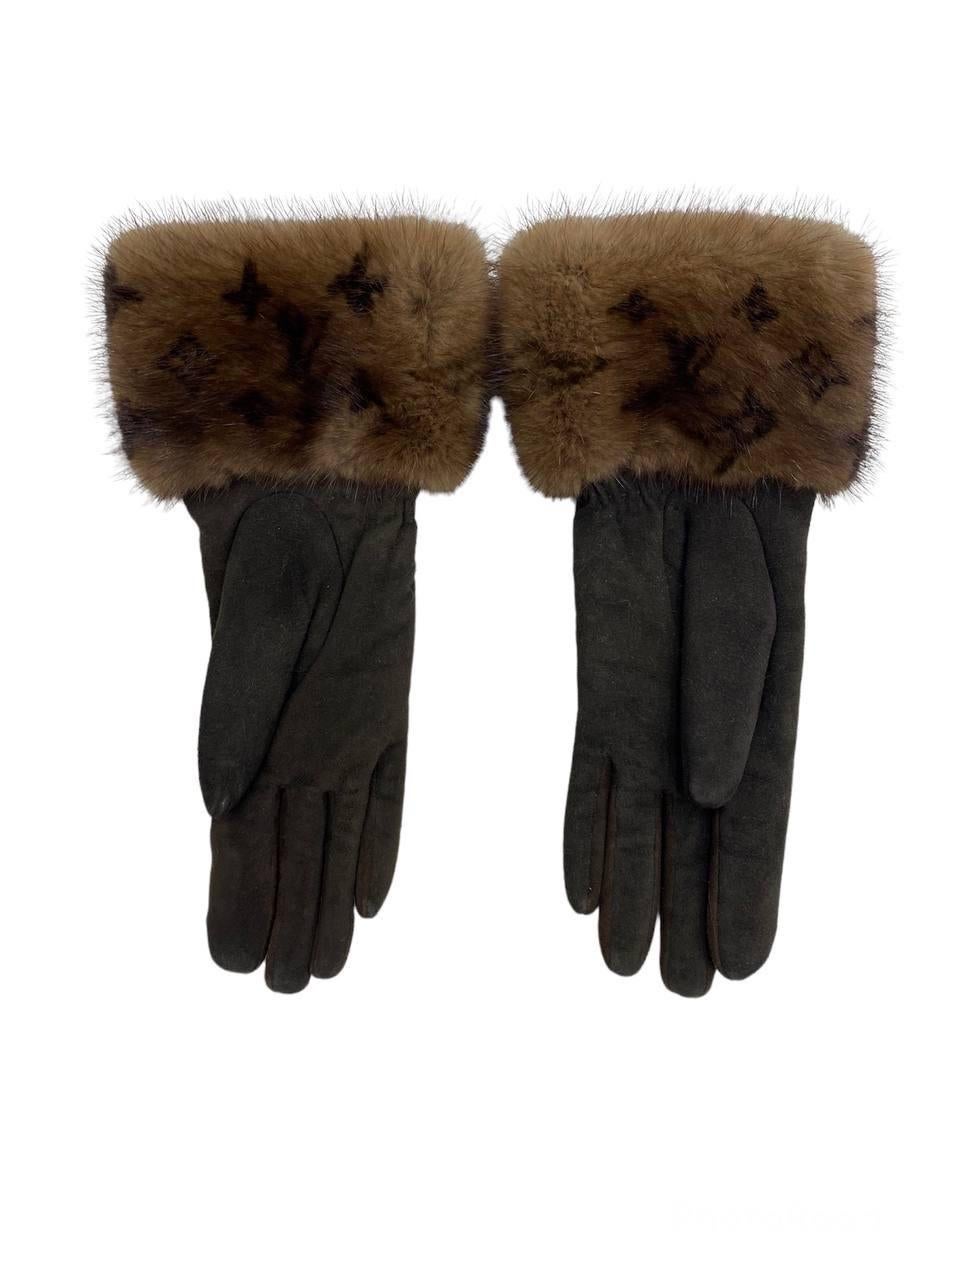 mink gloves for sale